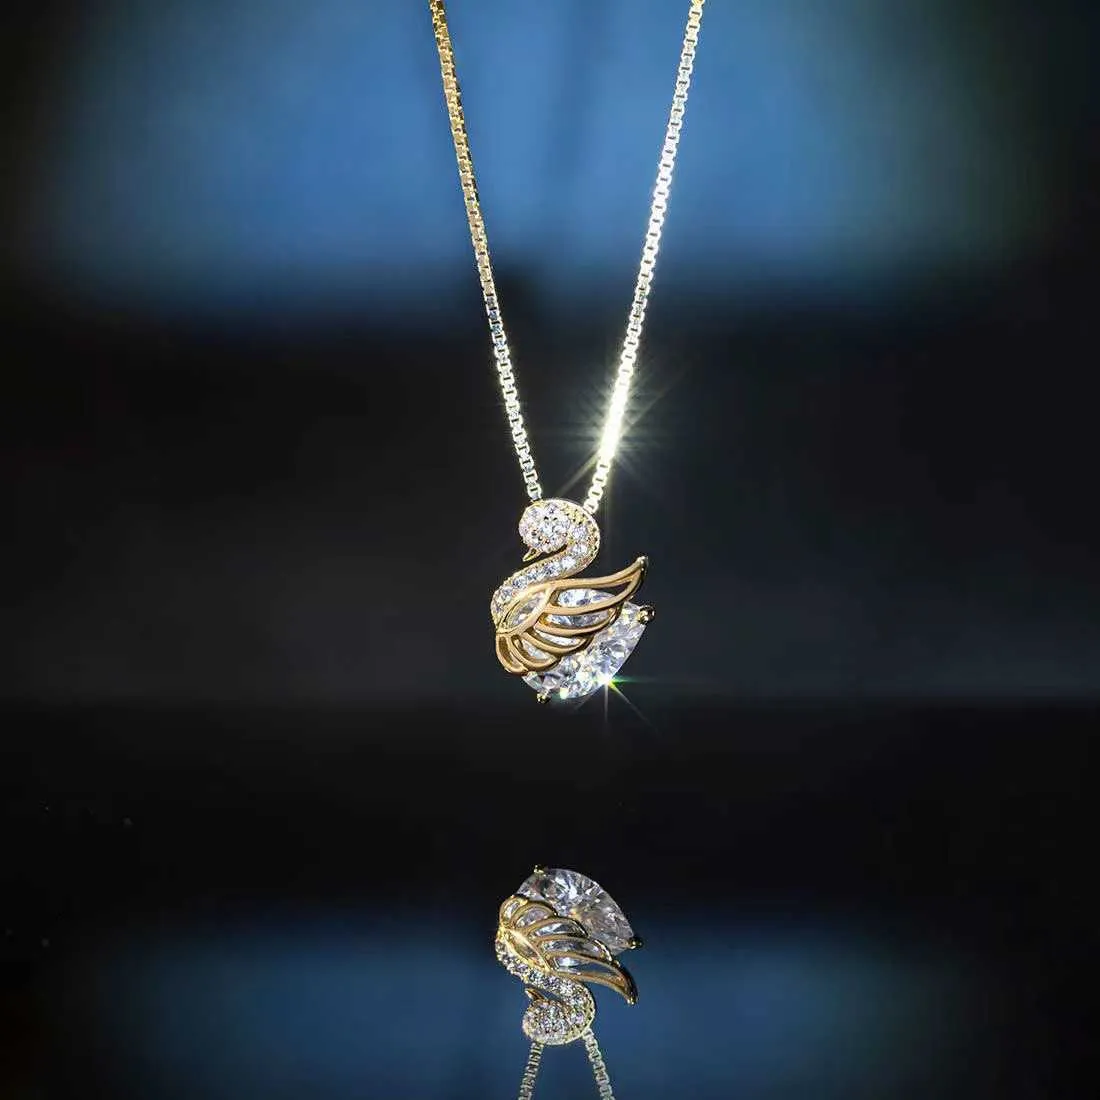 Медное покрытое 18-километровым инкрустационным лебеденным ожерельем для женщин светлый роскошный модный и элегантный дизайн.